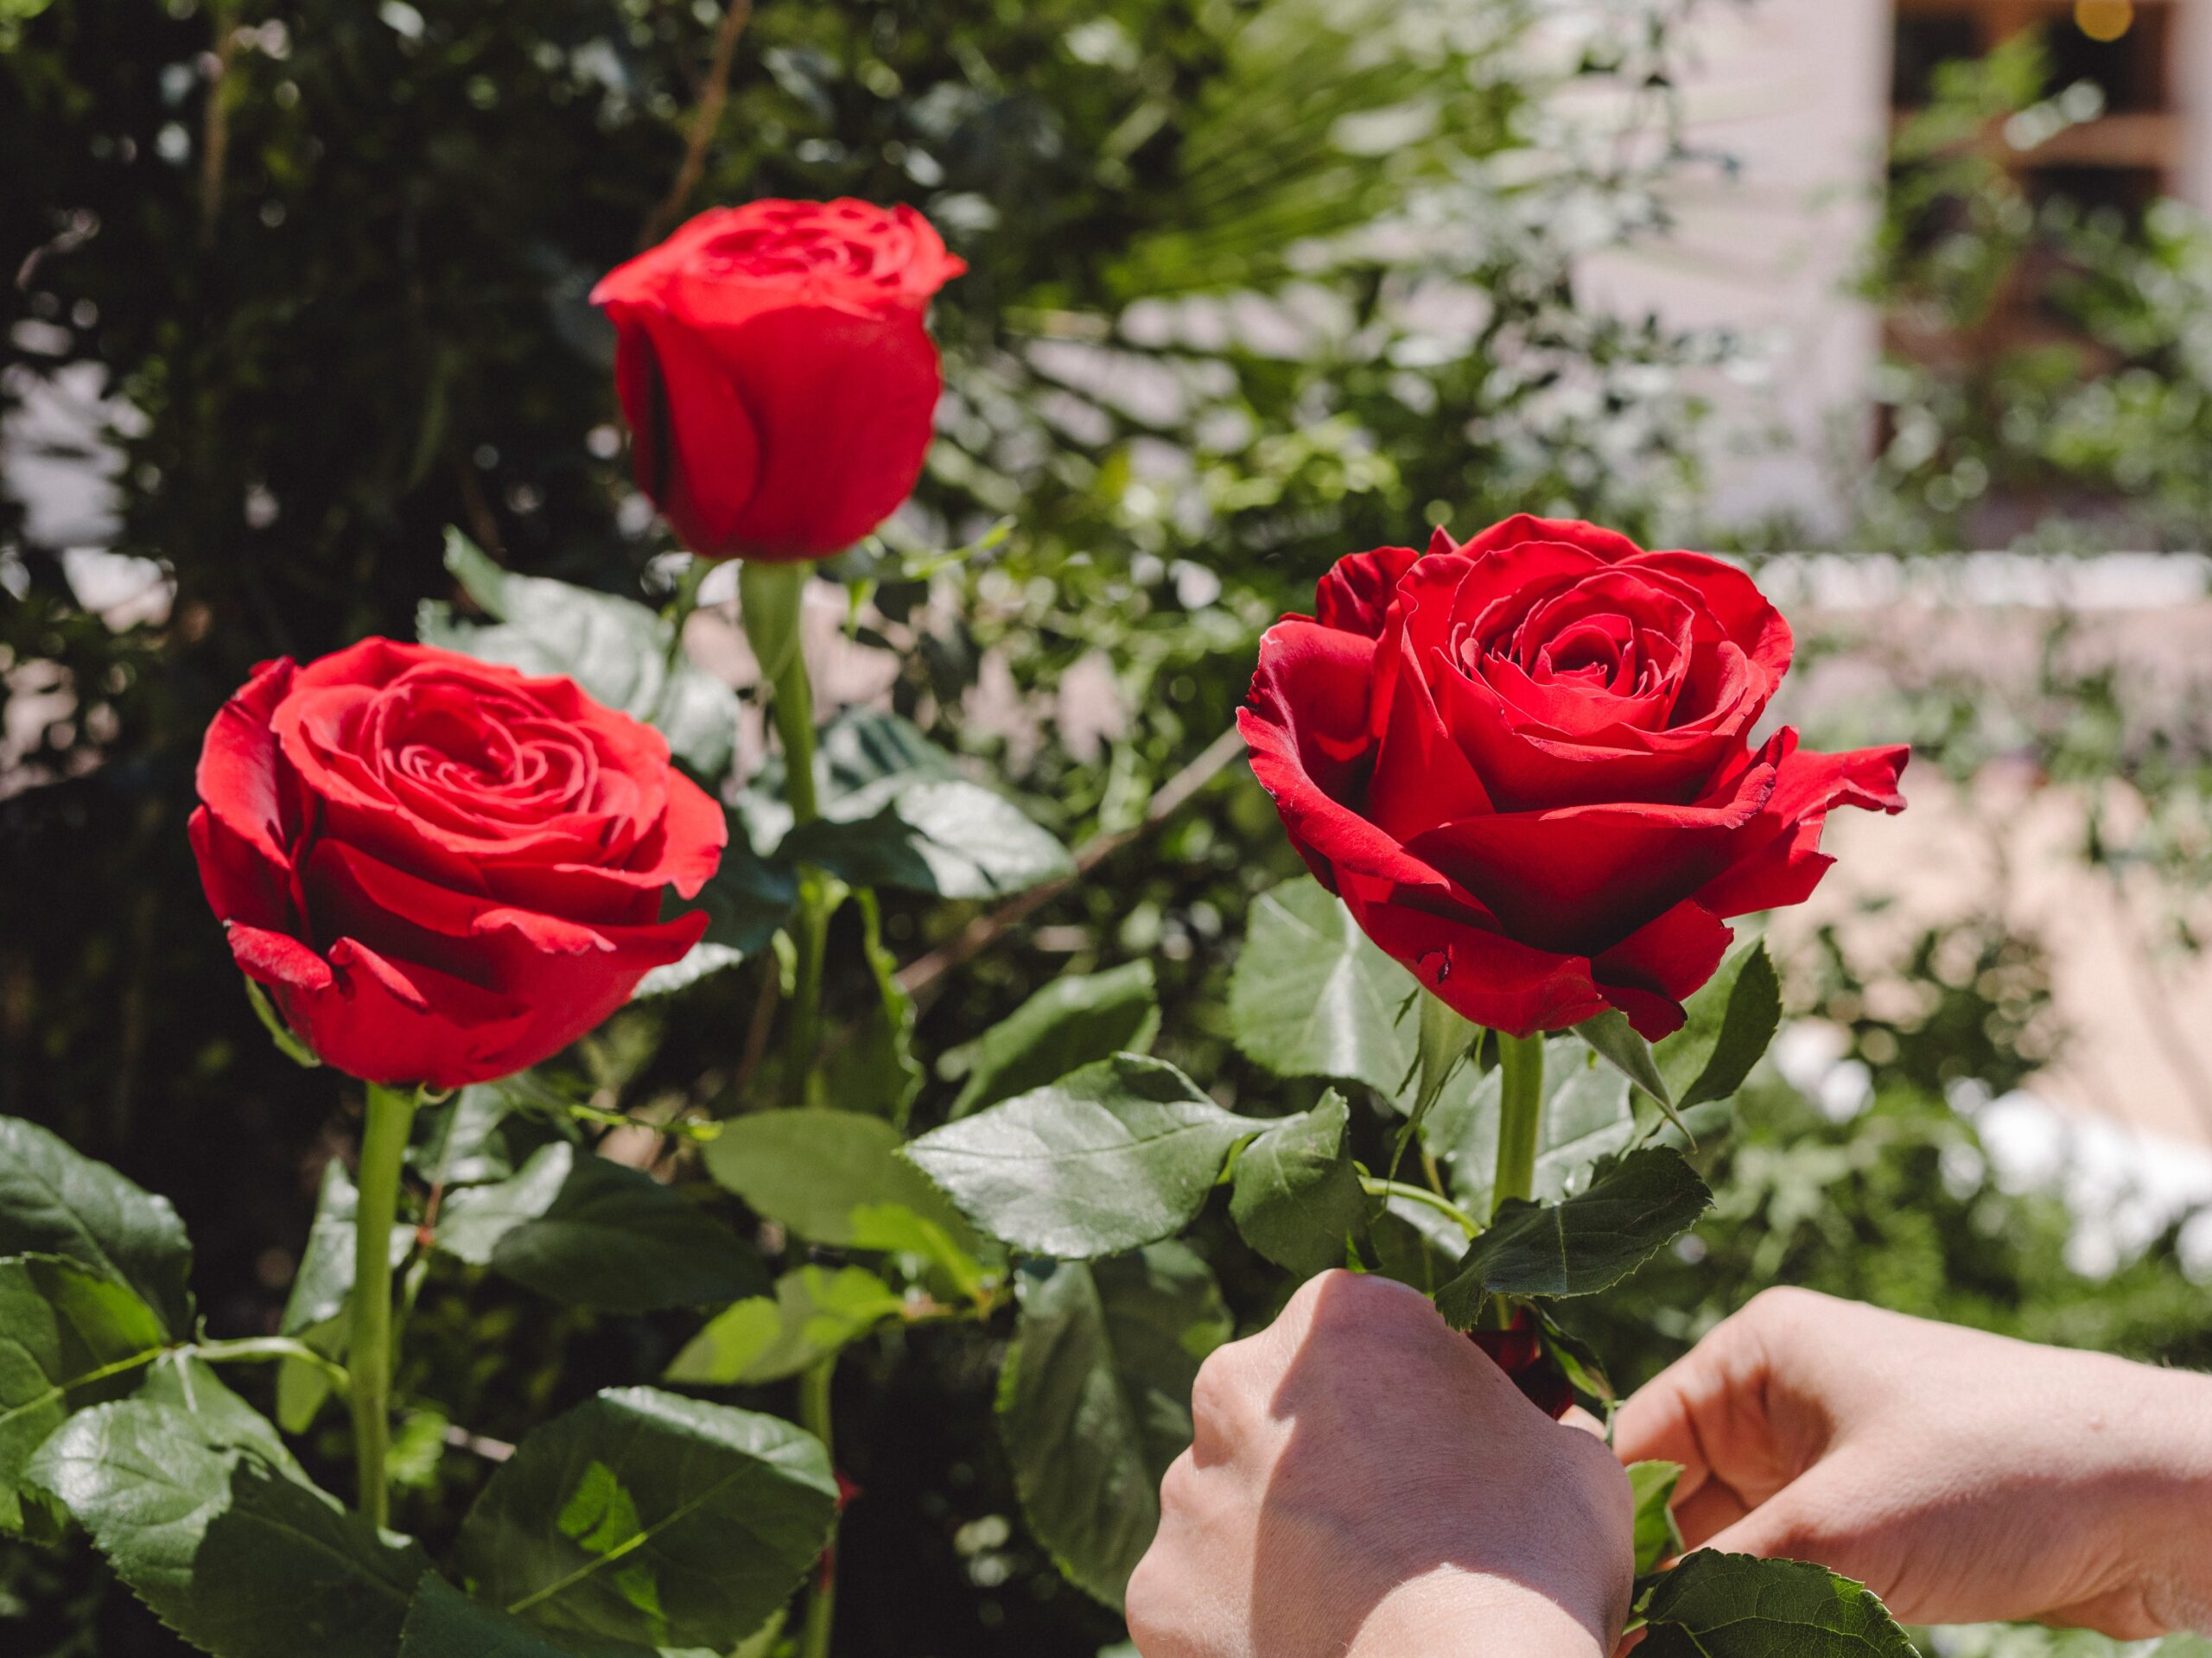 Rosa profumata: le varietà di rose più fragranti